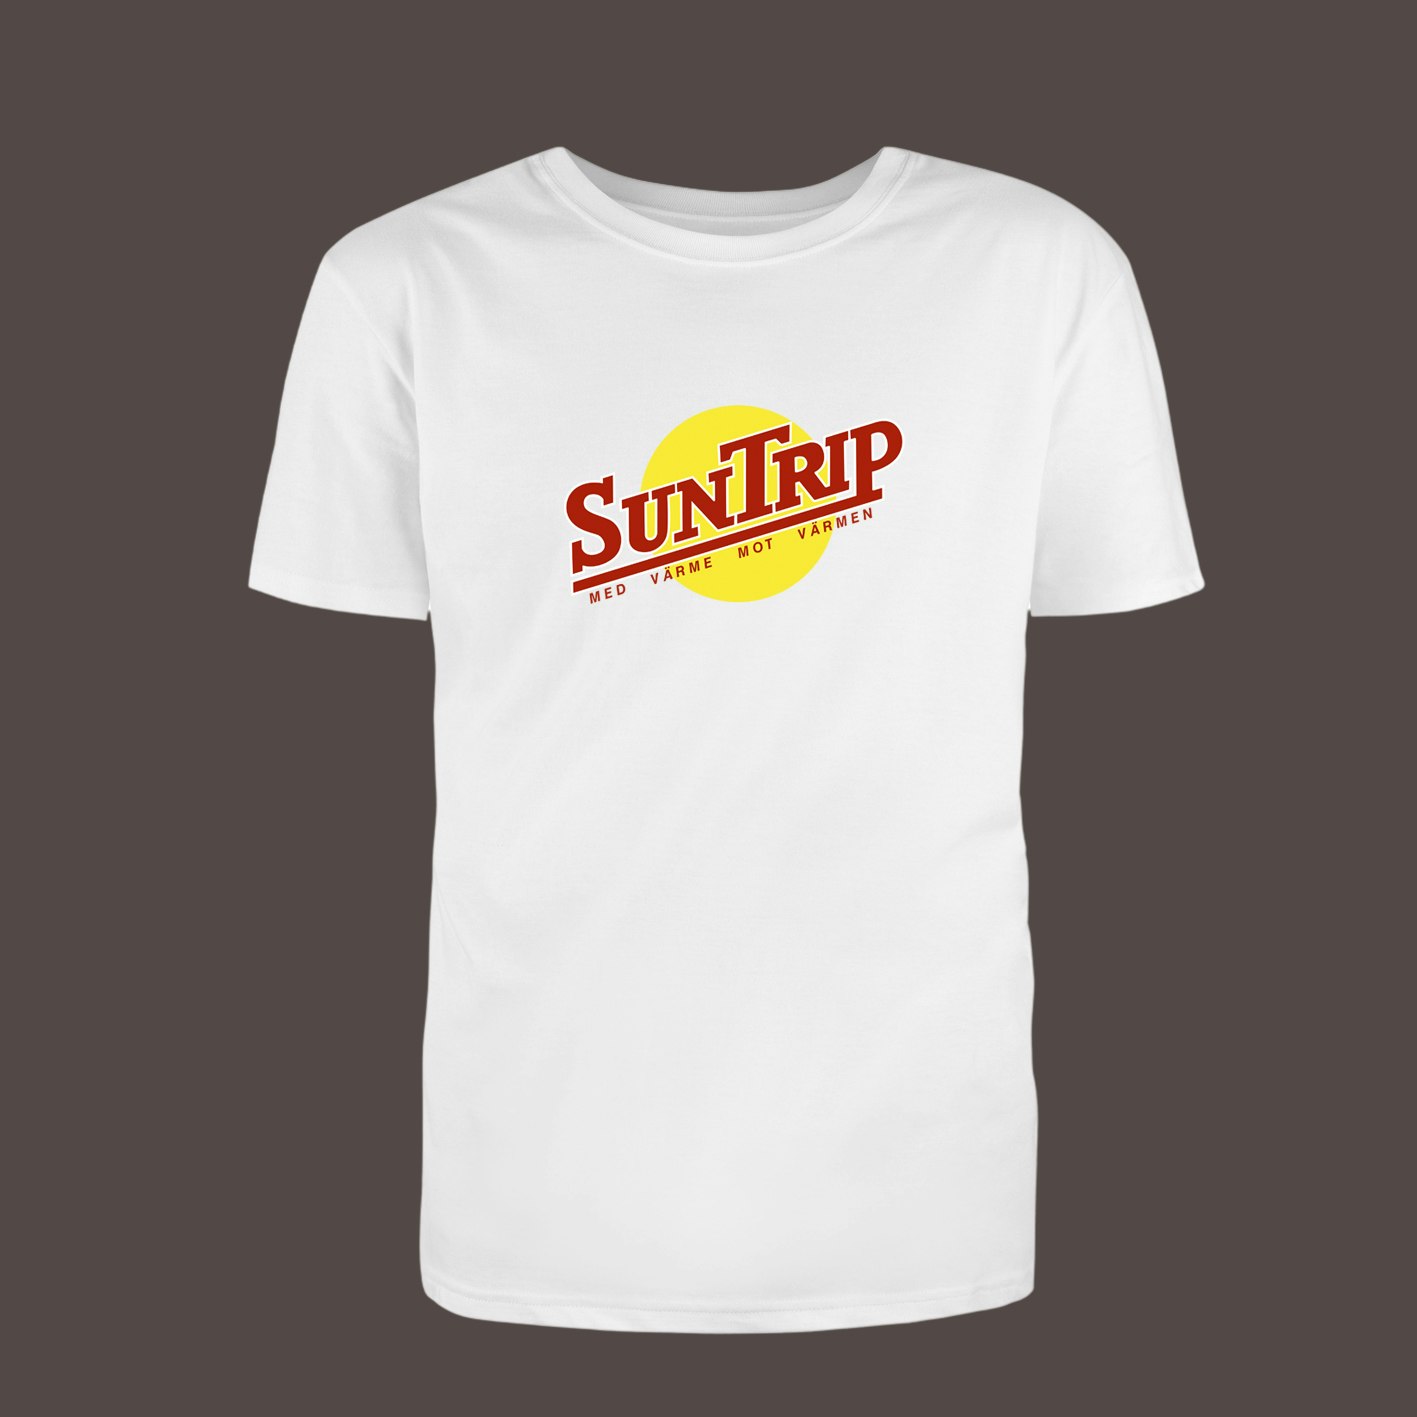 Suntrip T-shirt - Klassikern från Sällskapsresan - Kläder och tygpåsar med  eget tryck